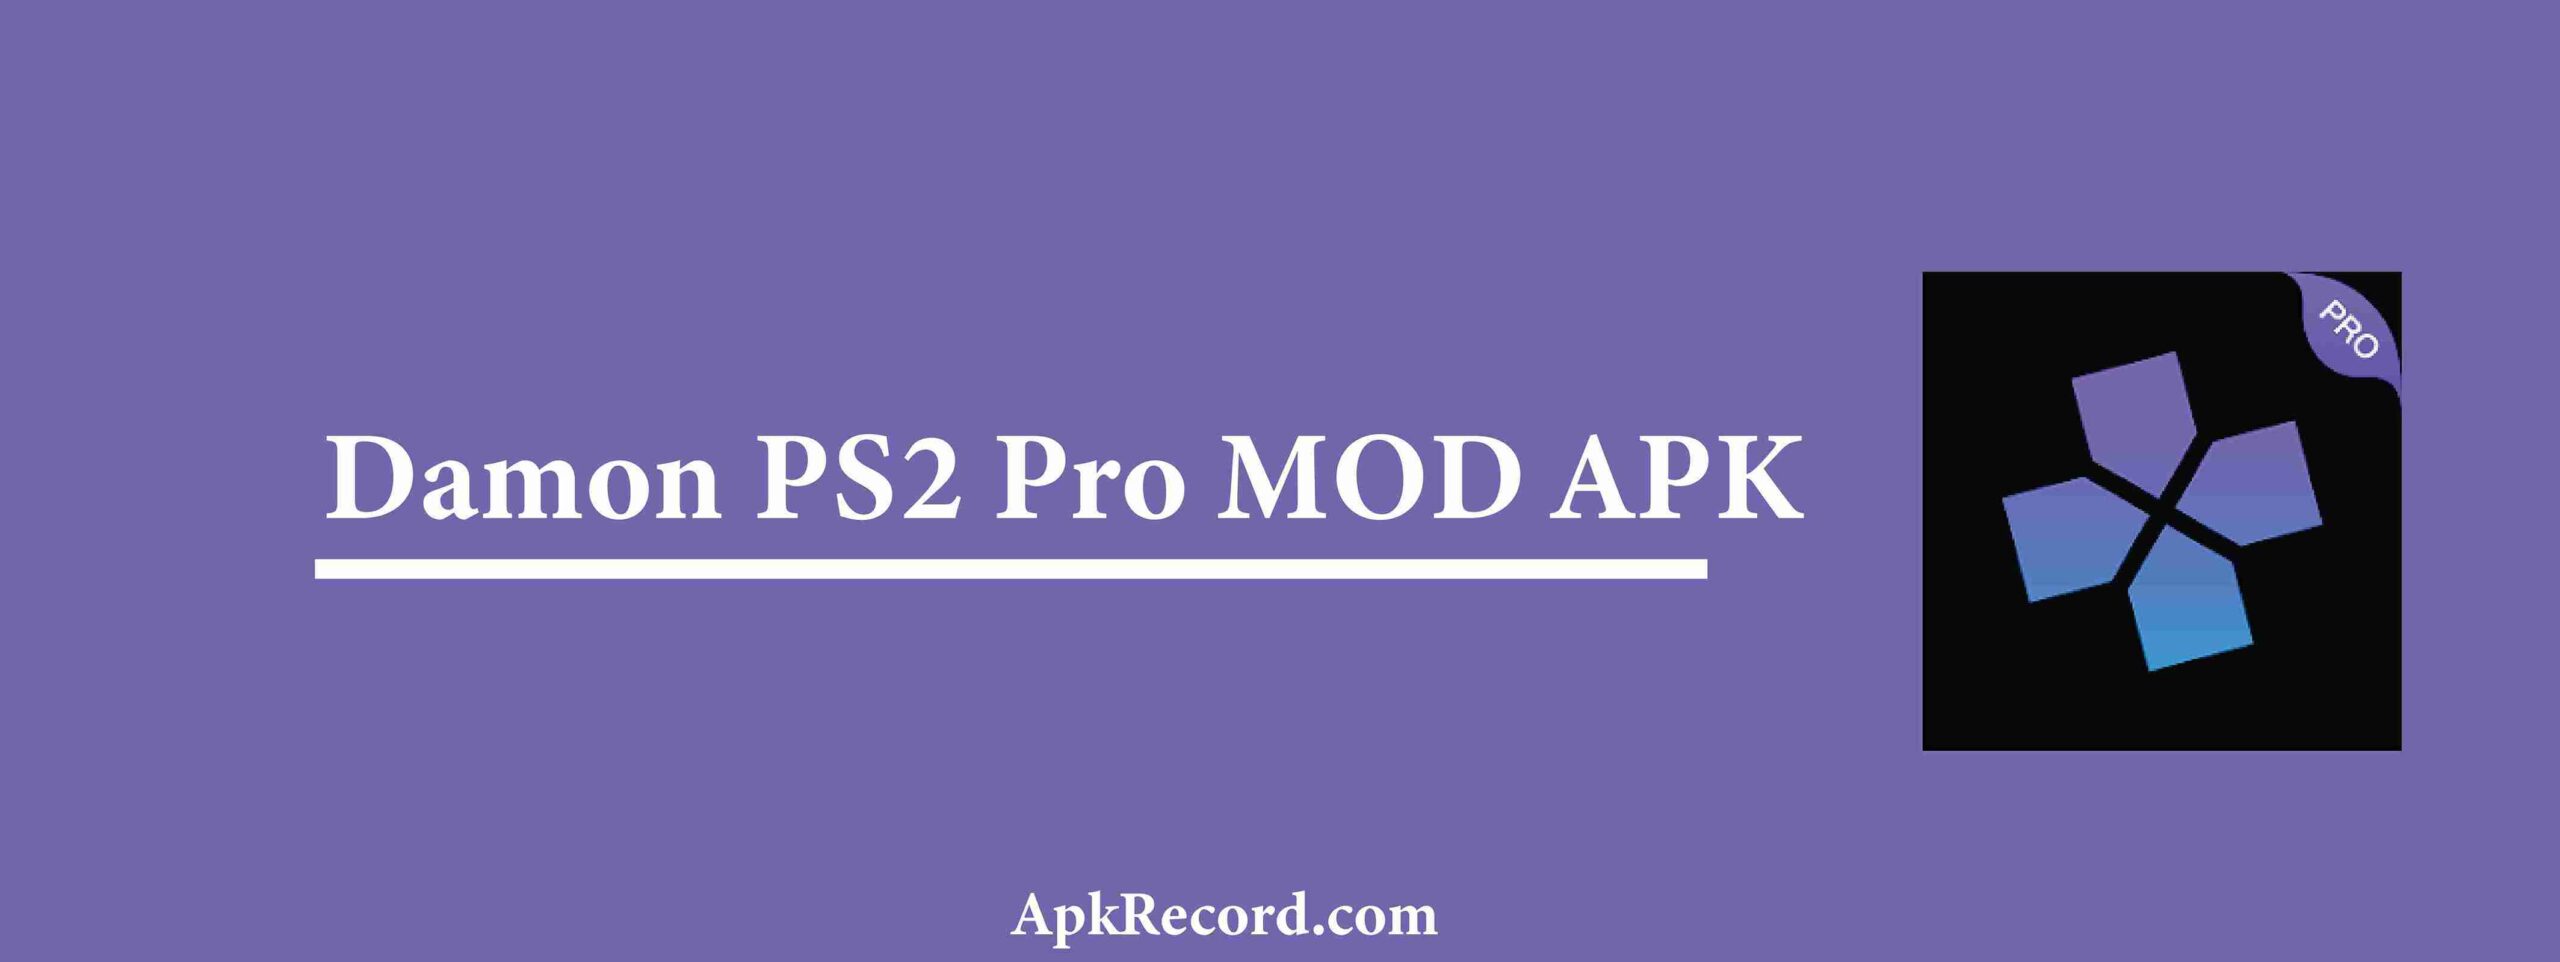 Damon PS2 Pro MOD APK V6.0.3.1